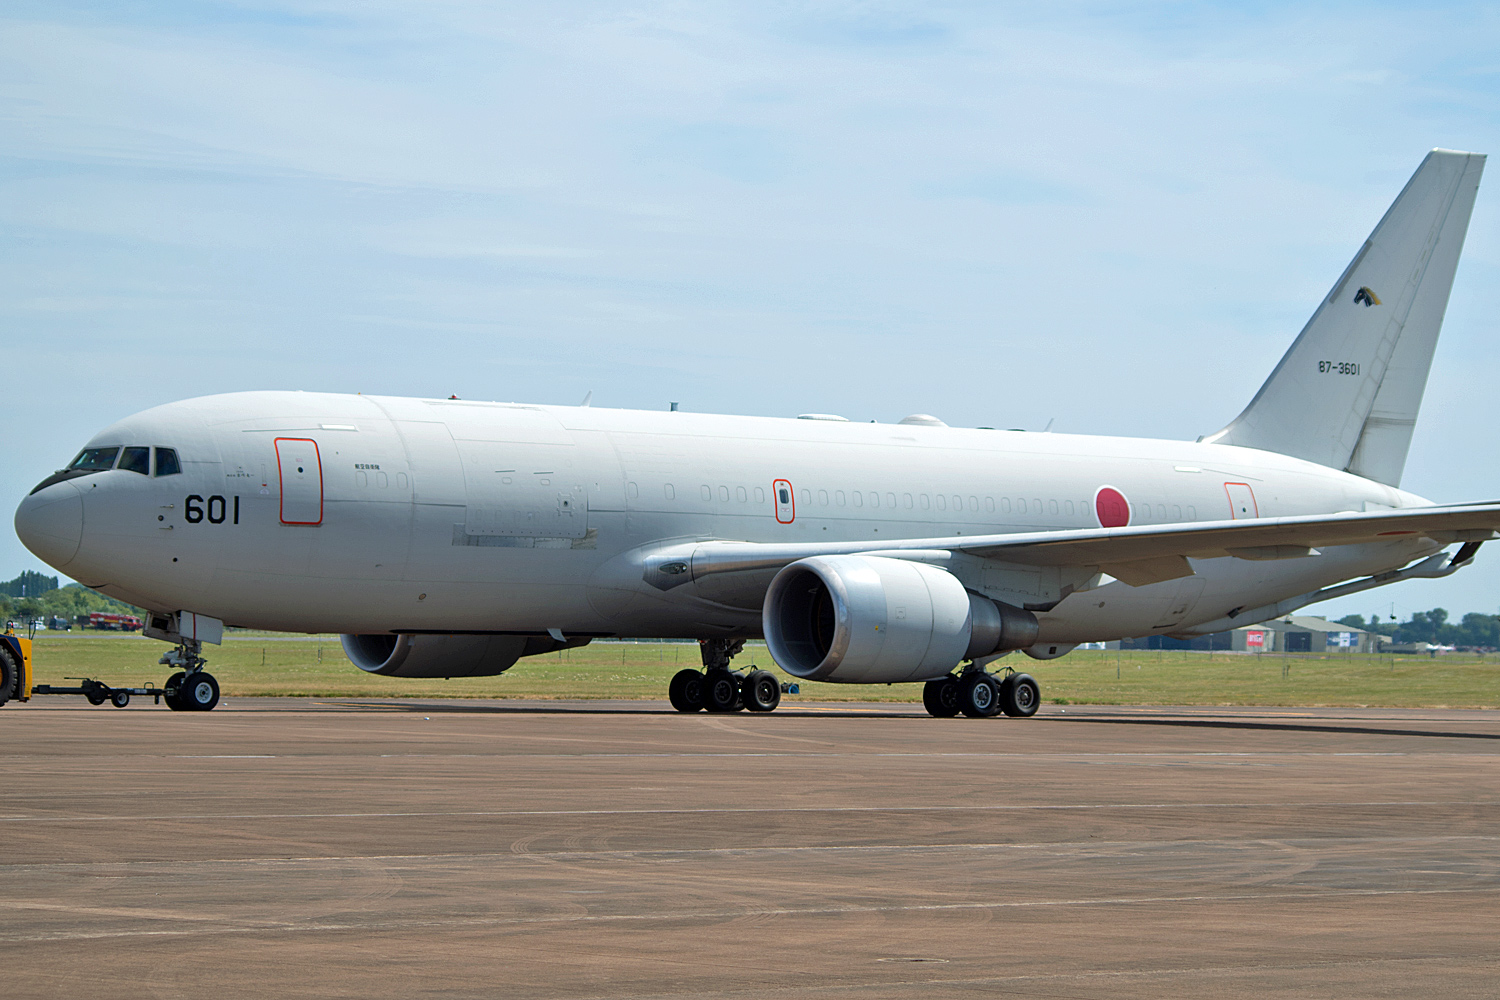 87-3601 KC-767J 404 Hikotai Japan